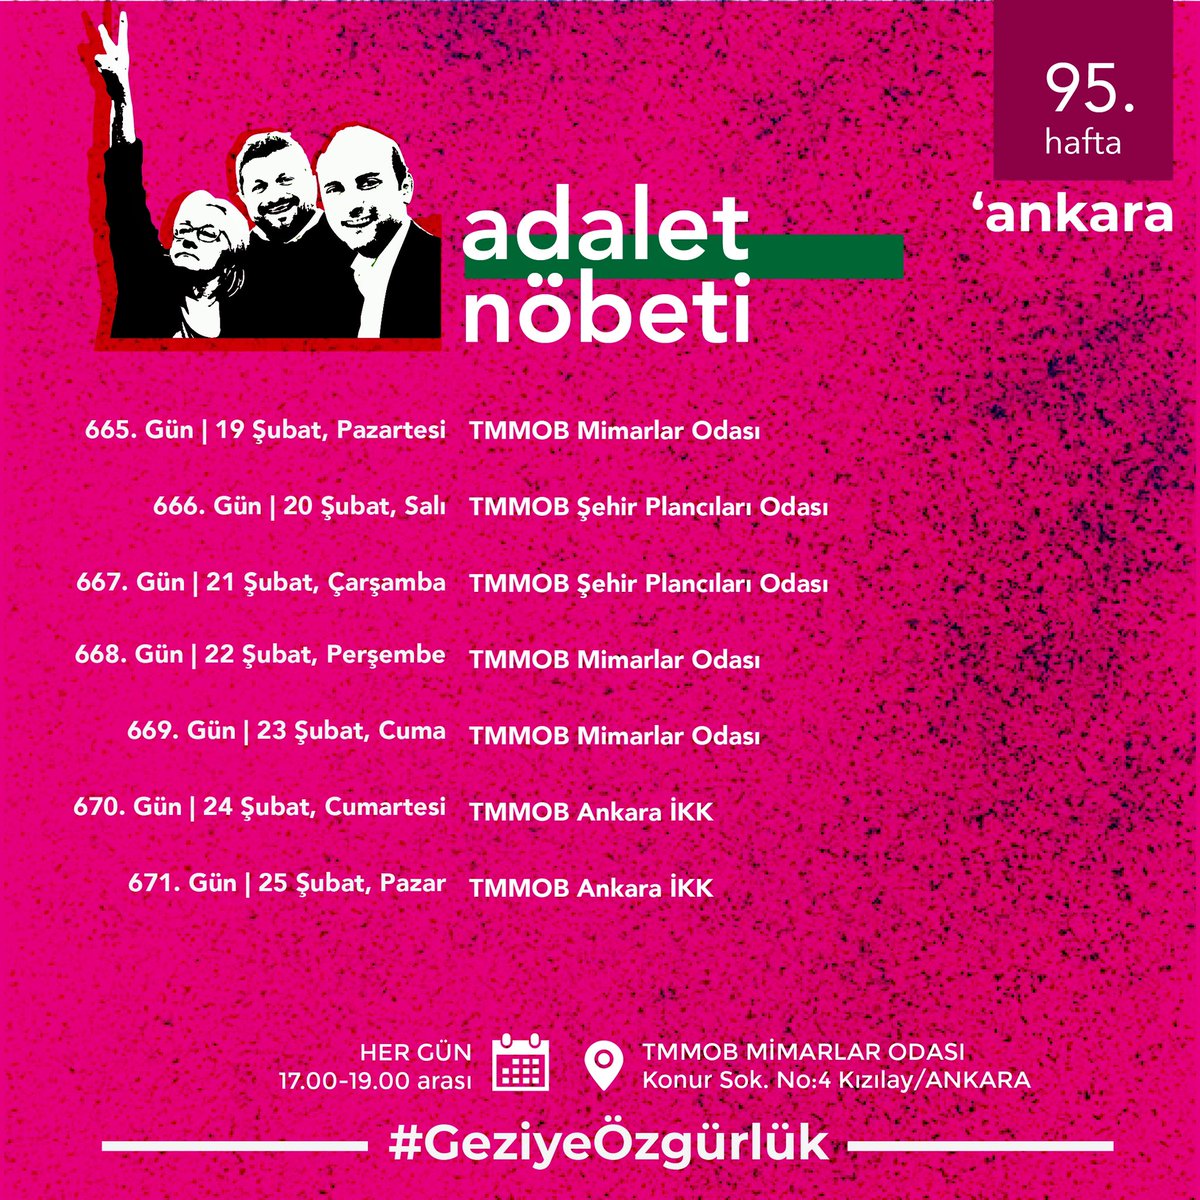 95. Hafta | Ankara Adalet Nöbeti’nin nöbet programı 🗓 Her gün ⏰ 17.00-19.00 📍 TMMOB Mimarlar Odası #GeziyeÖzgürlük #GeziyiSavunuyoruz